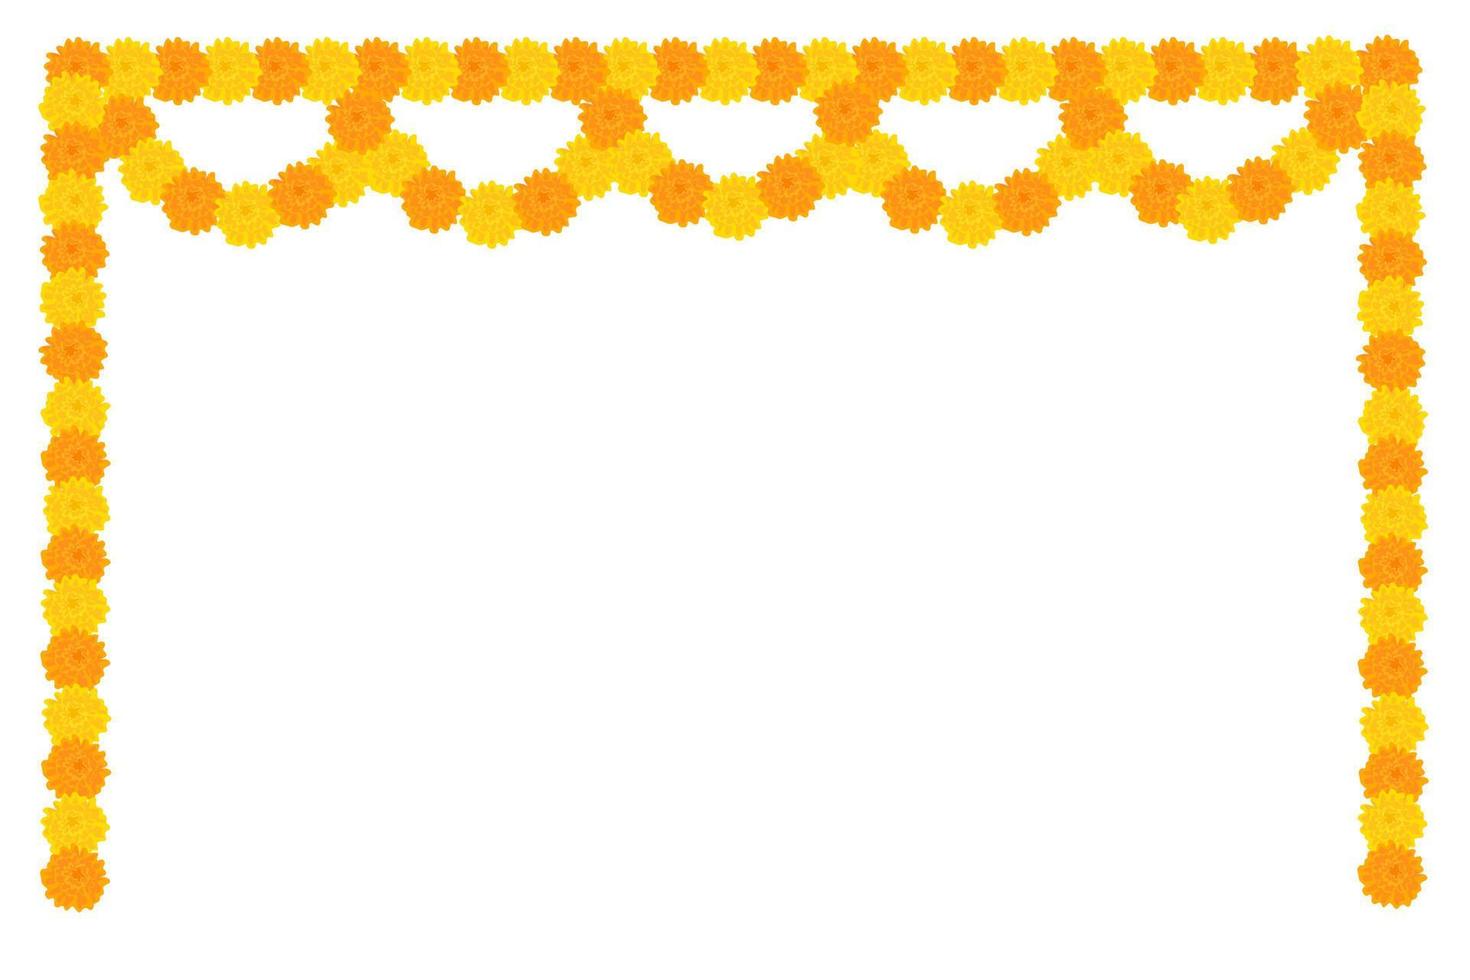 traditioneller indischer blumengirlandenrahmen mit ringelblumenblumen. Dekoration für indische hinduistische Feiertage. Vektor-Illustration isoliert auf weißem Hintergrund. vektor